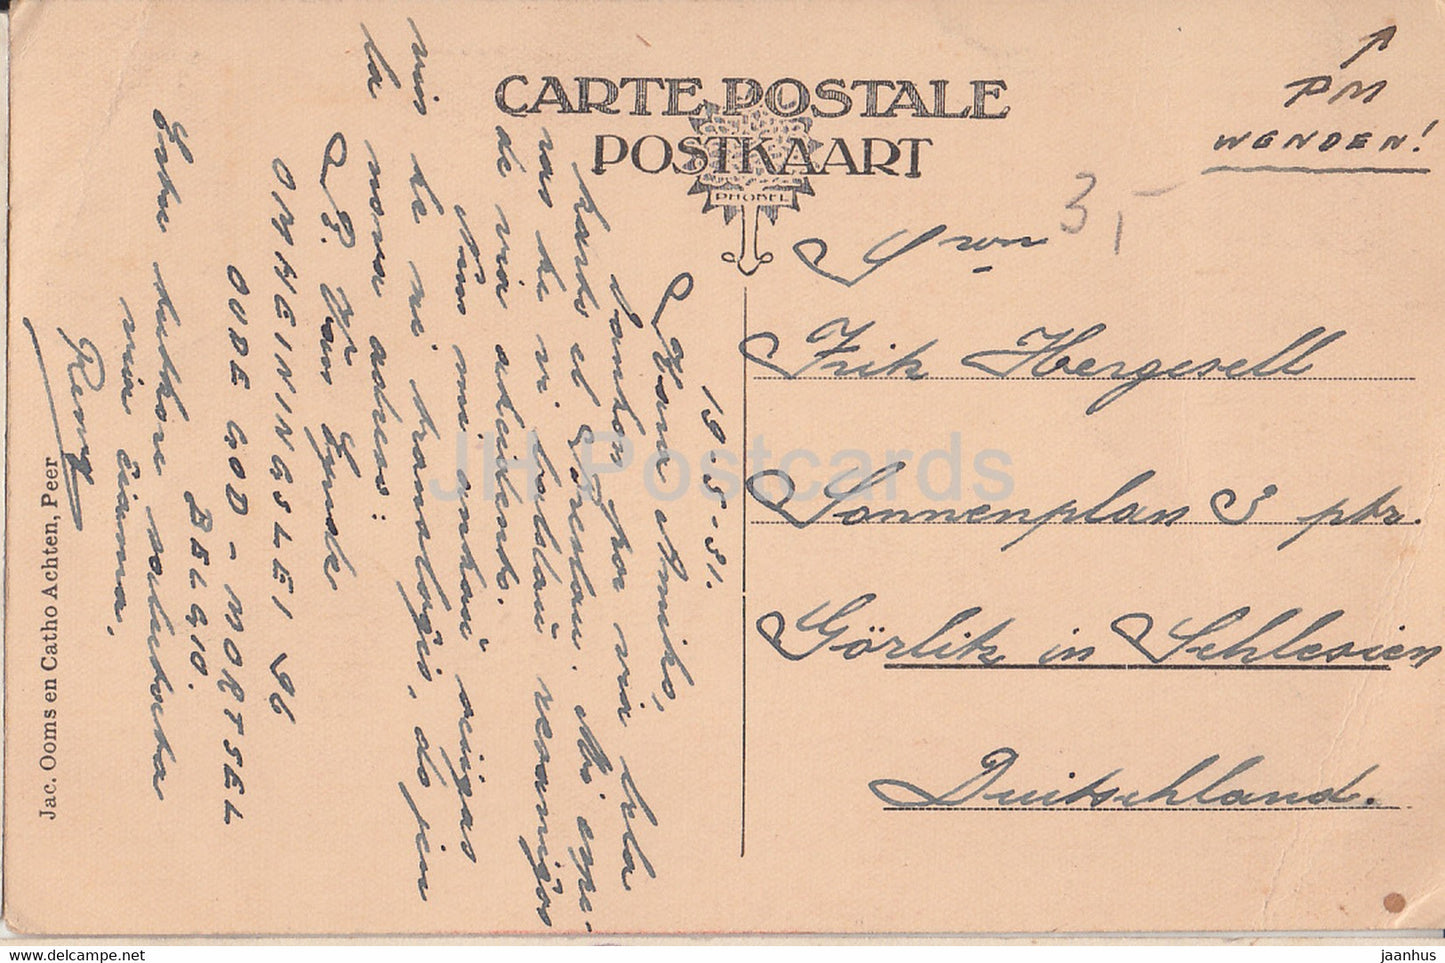 Peer - De Molen - windmill - old postcard - 1931 - Belgium - used